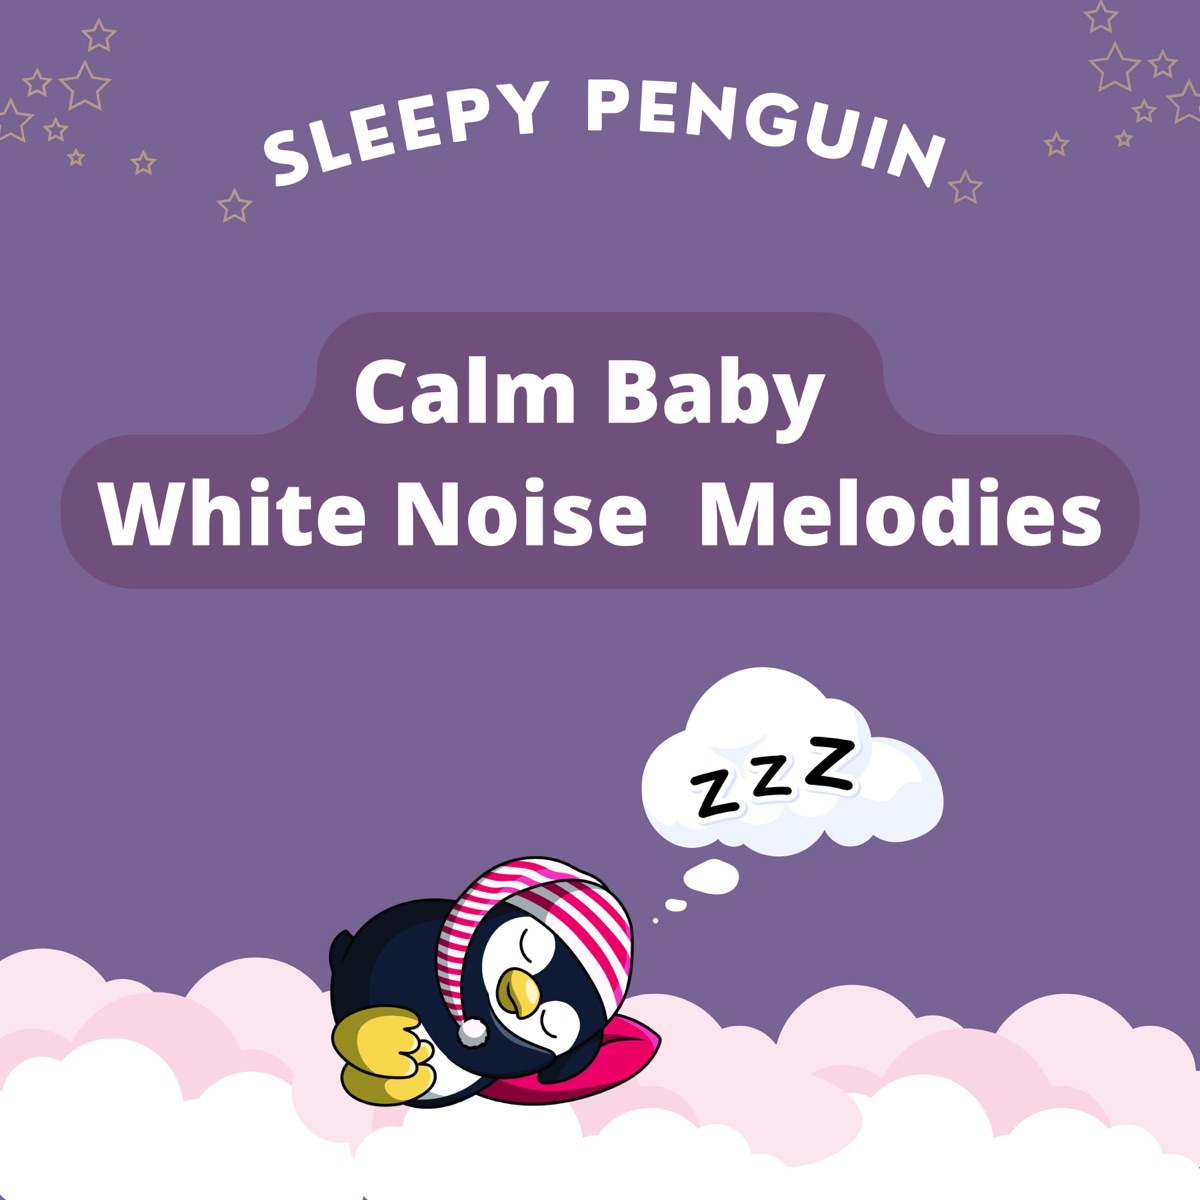 Sleepy penguin white noise